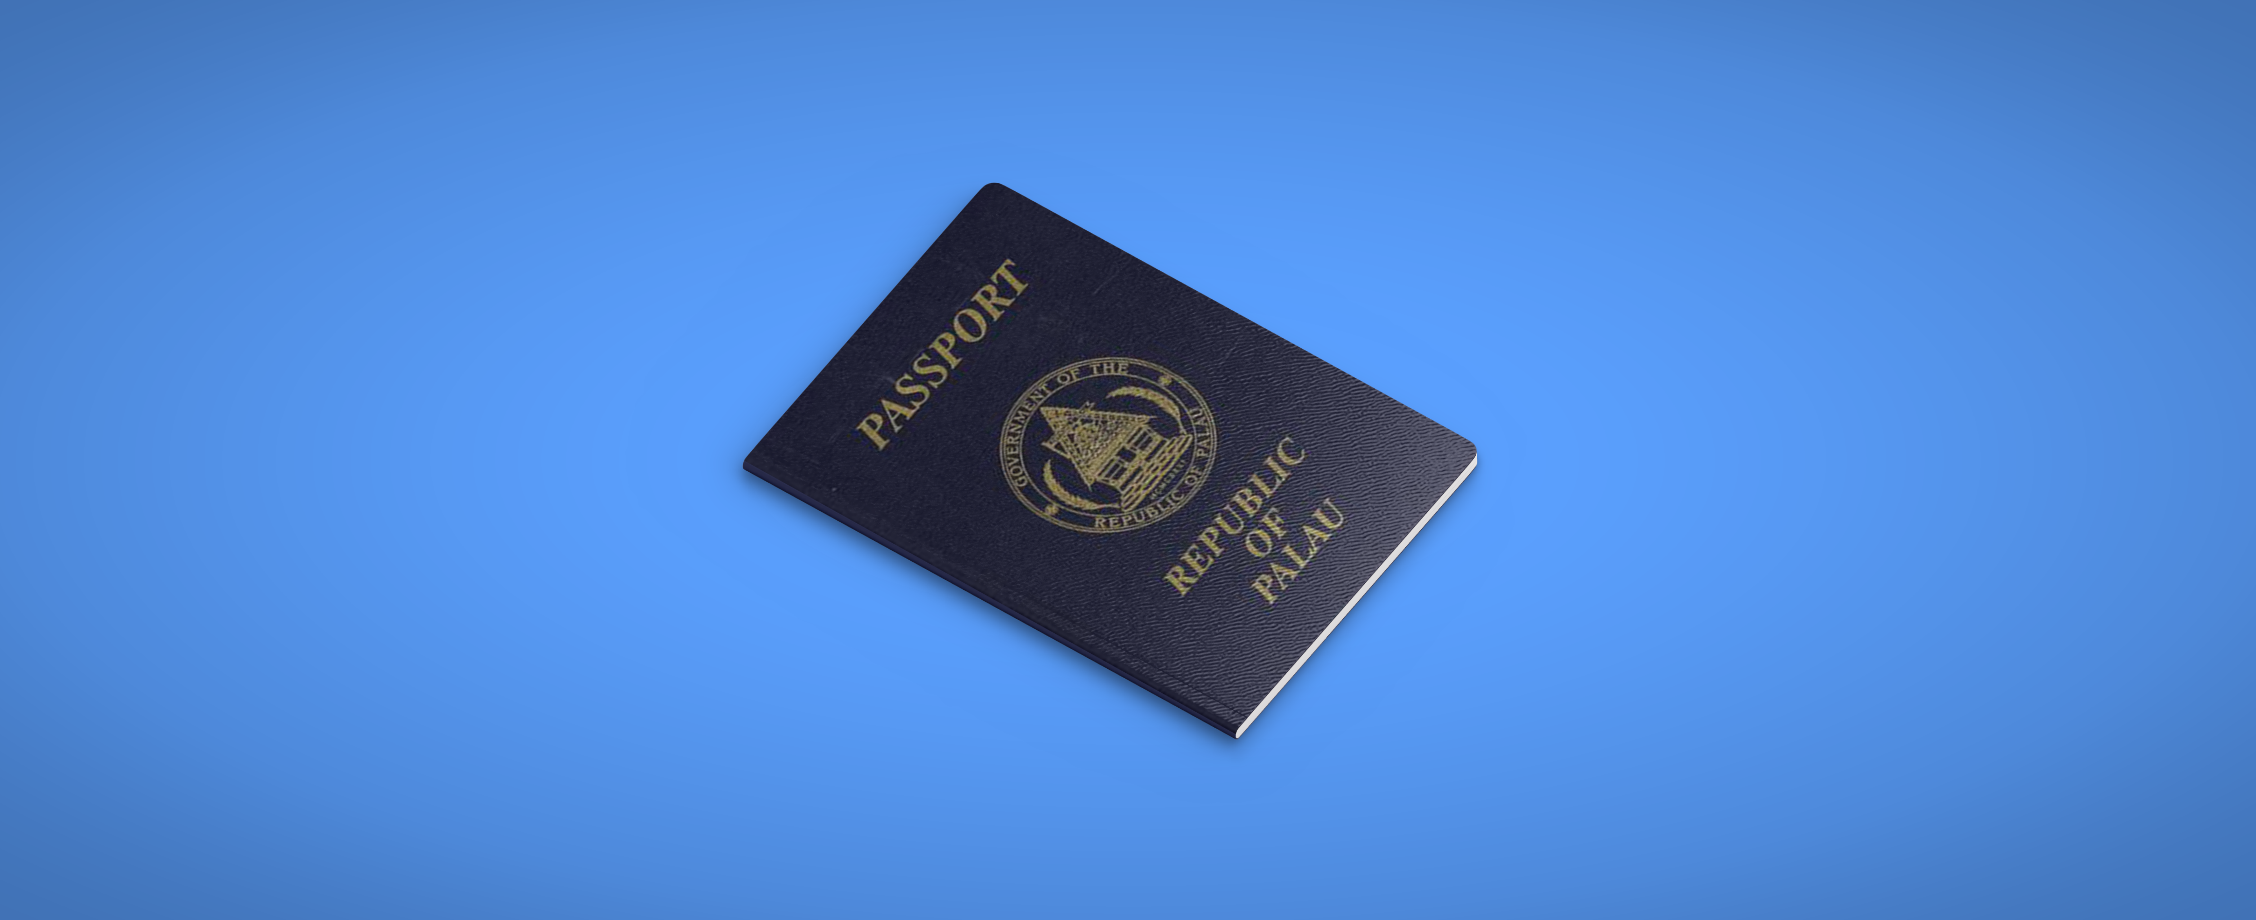 Дешевый иностранный паспорт: чем поможет россиянину виртуальное резидентство Республики Палау